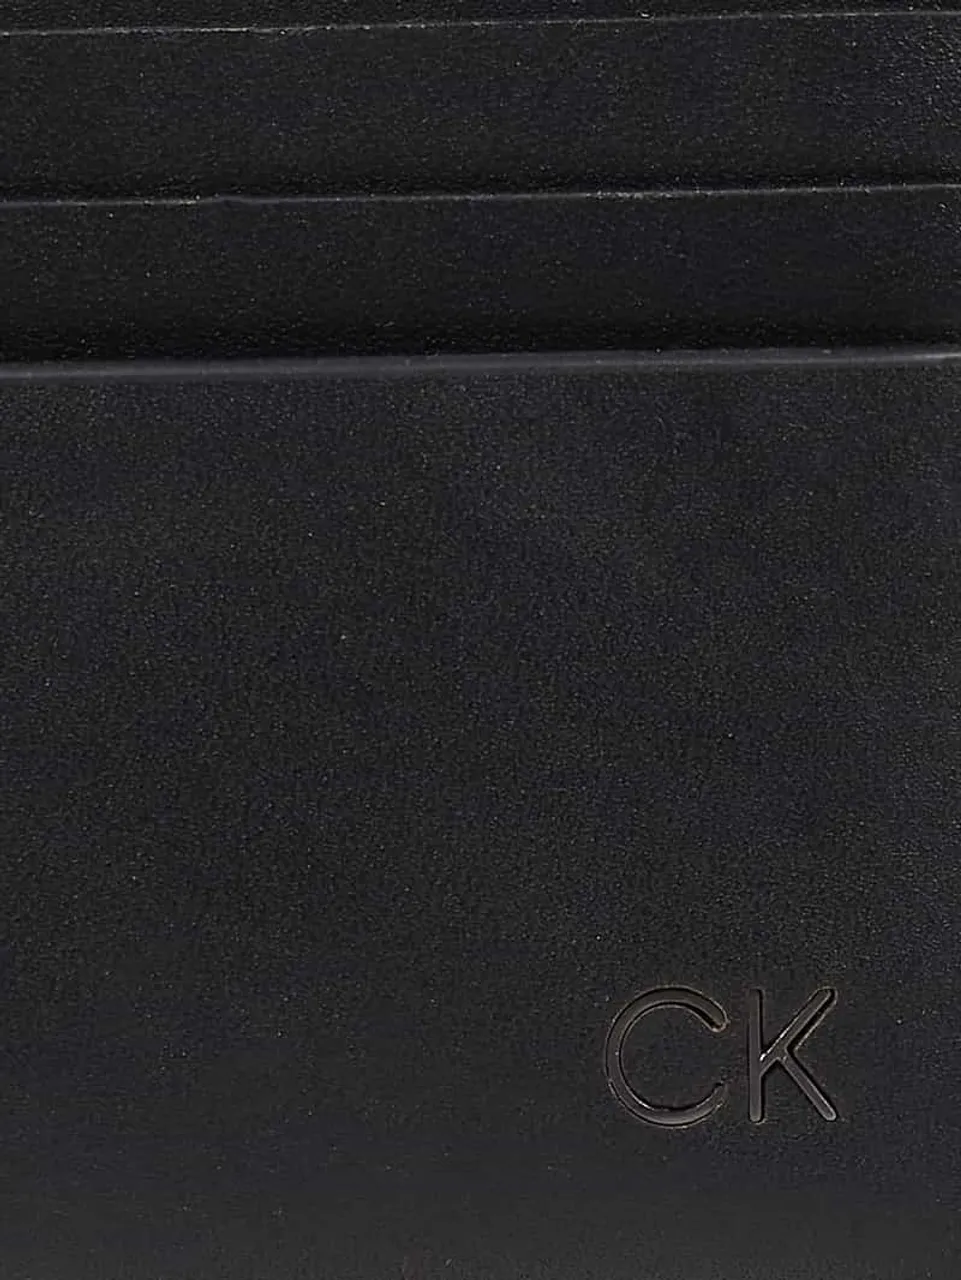 CK Calvin Klein Kartenetui aus Leder in Black, Größe One Size